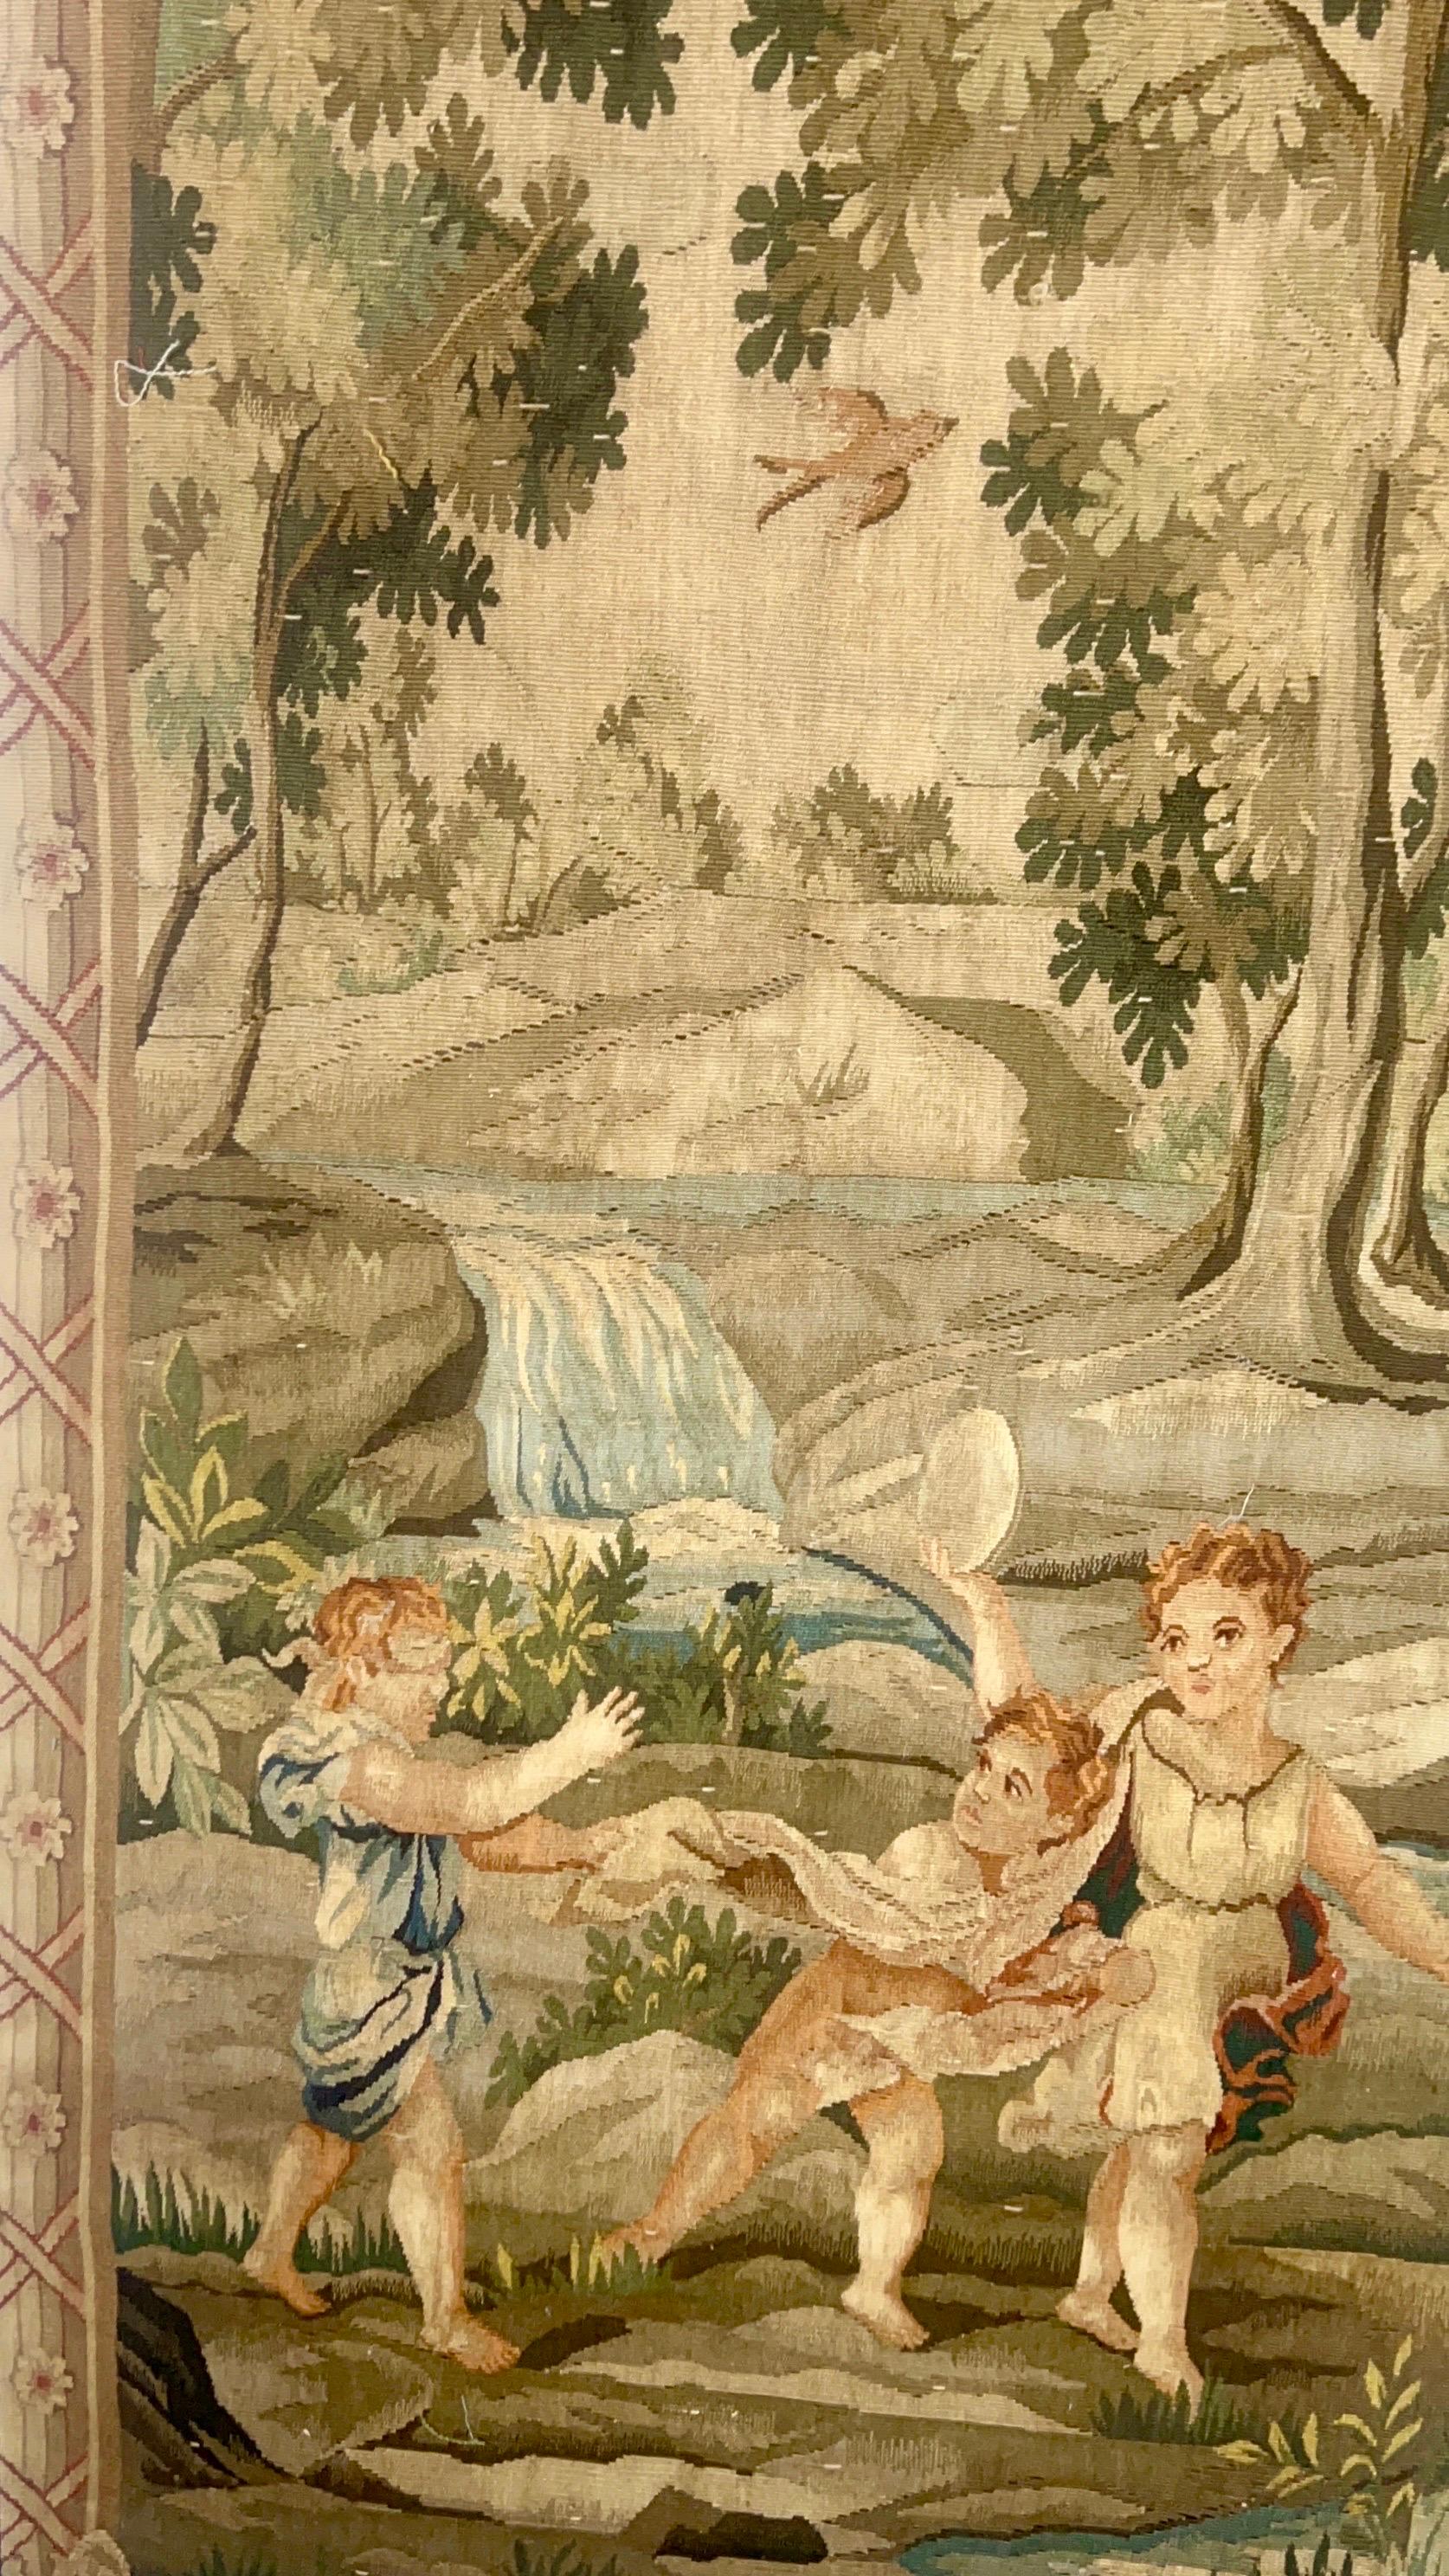 Belgische und französische Wandteppiche von hoher Qualität sind gewebte Wandbehänge, die eine Szene oder ein berühmtes Gemälde darstellen.  Dieser Wandteppich zeigt eine pastorale Szene. 
Im Vordergrund ist eine Gruppe von Kindern zu sehen, die auf